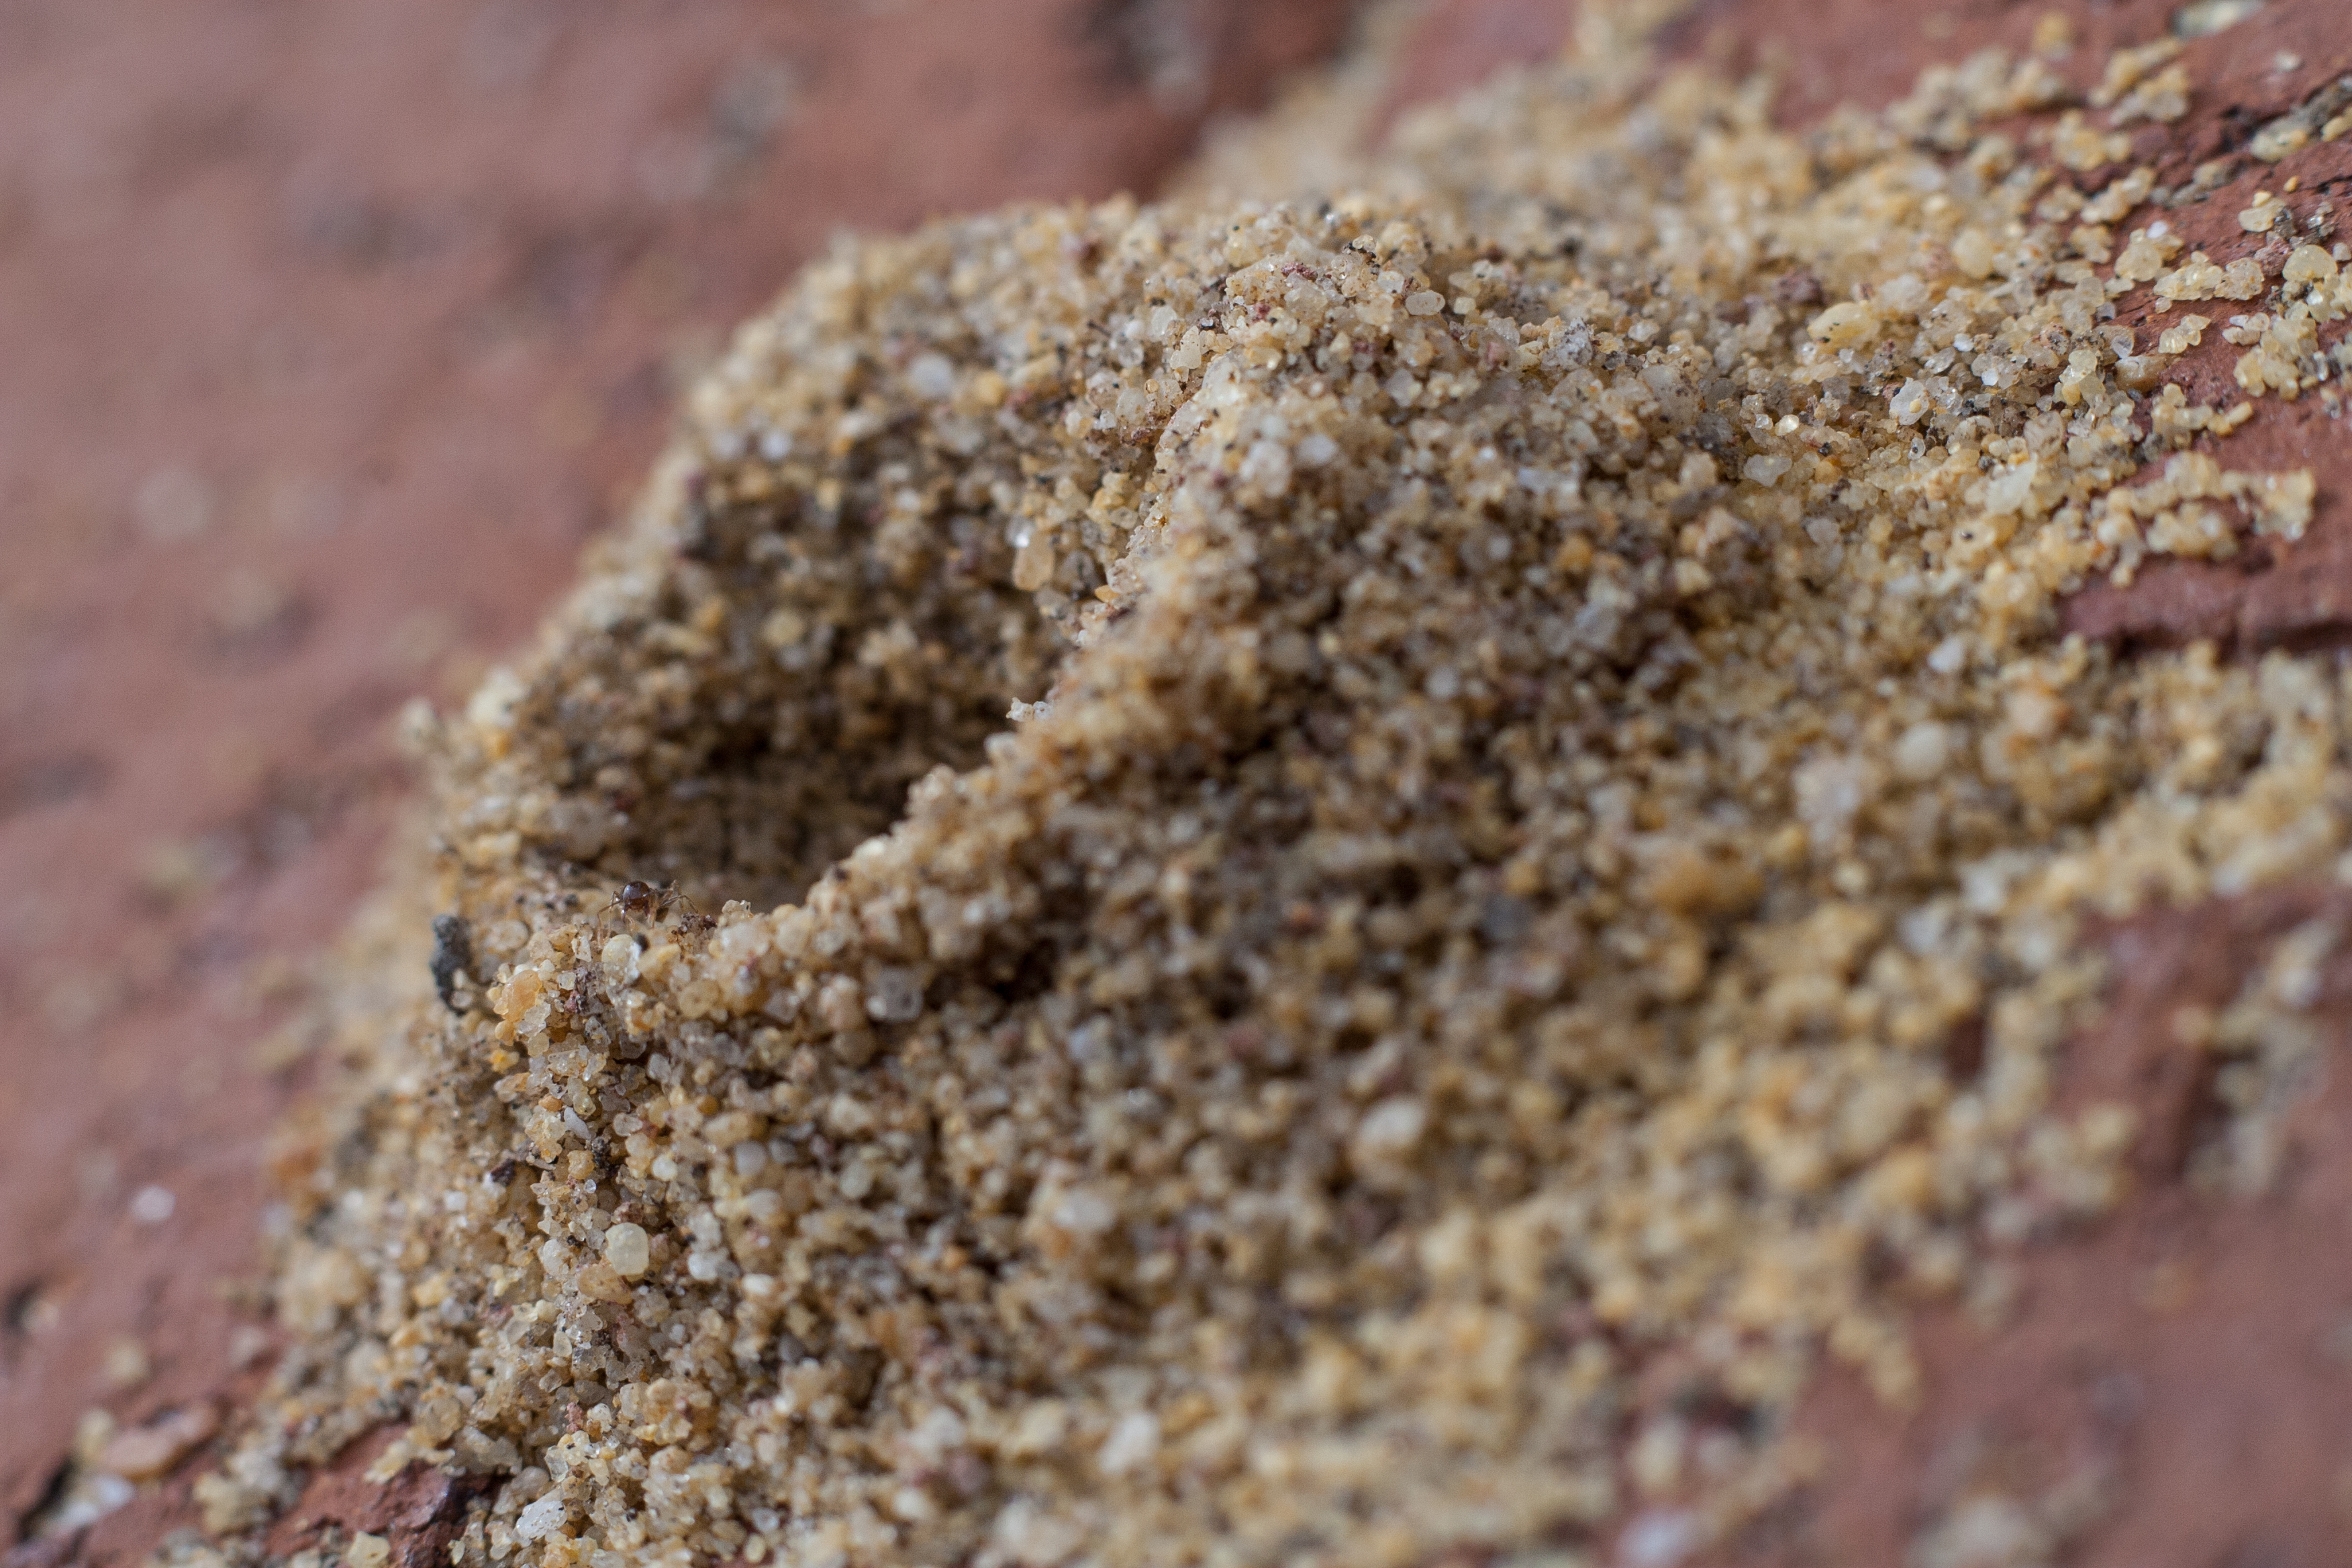 closeup of an anthill